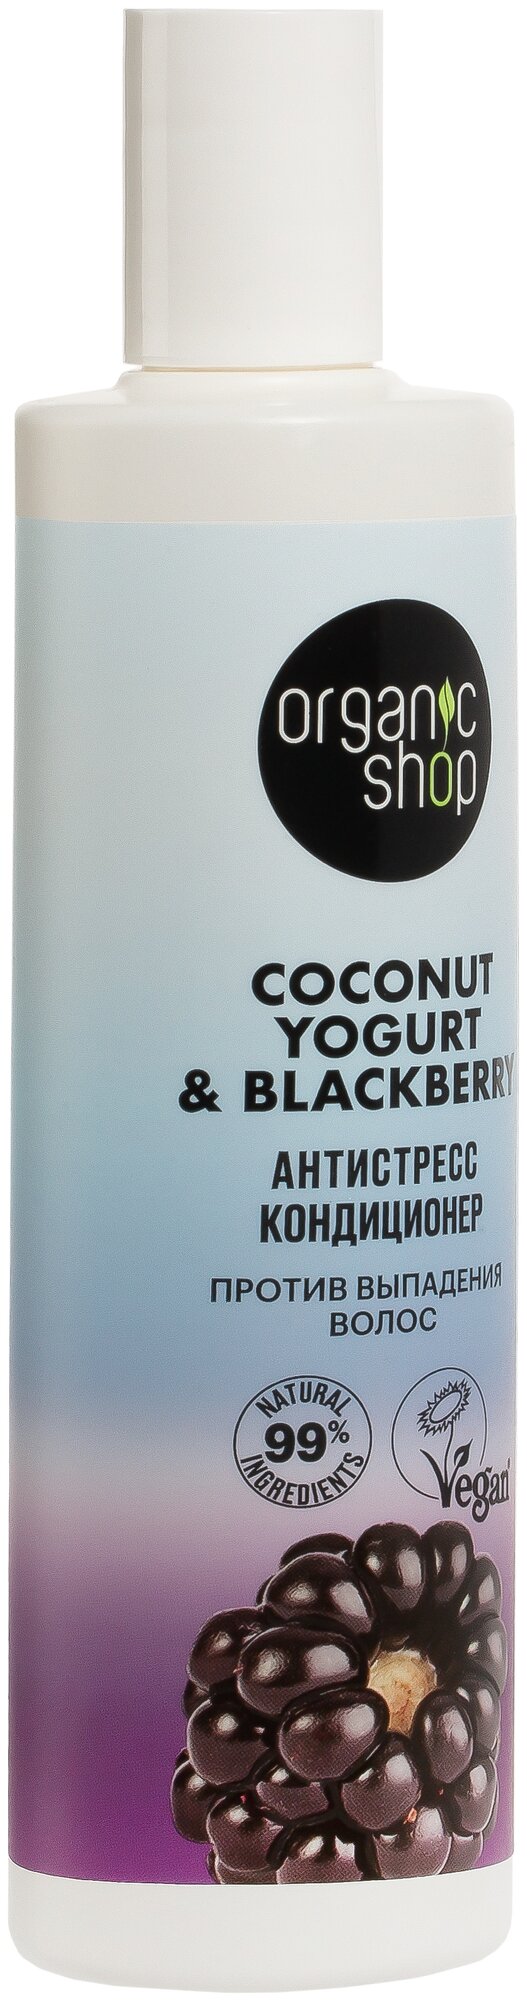 Шампунь против выпадения волос Organic Shop Coconut yogurt Антистресс, 280 мл - фото №7